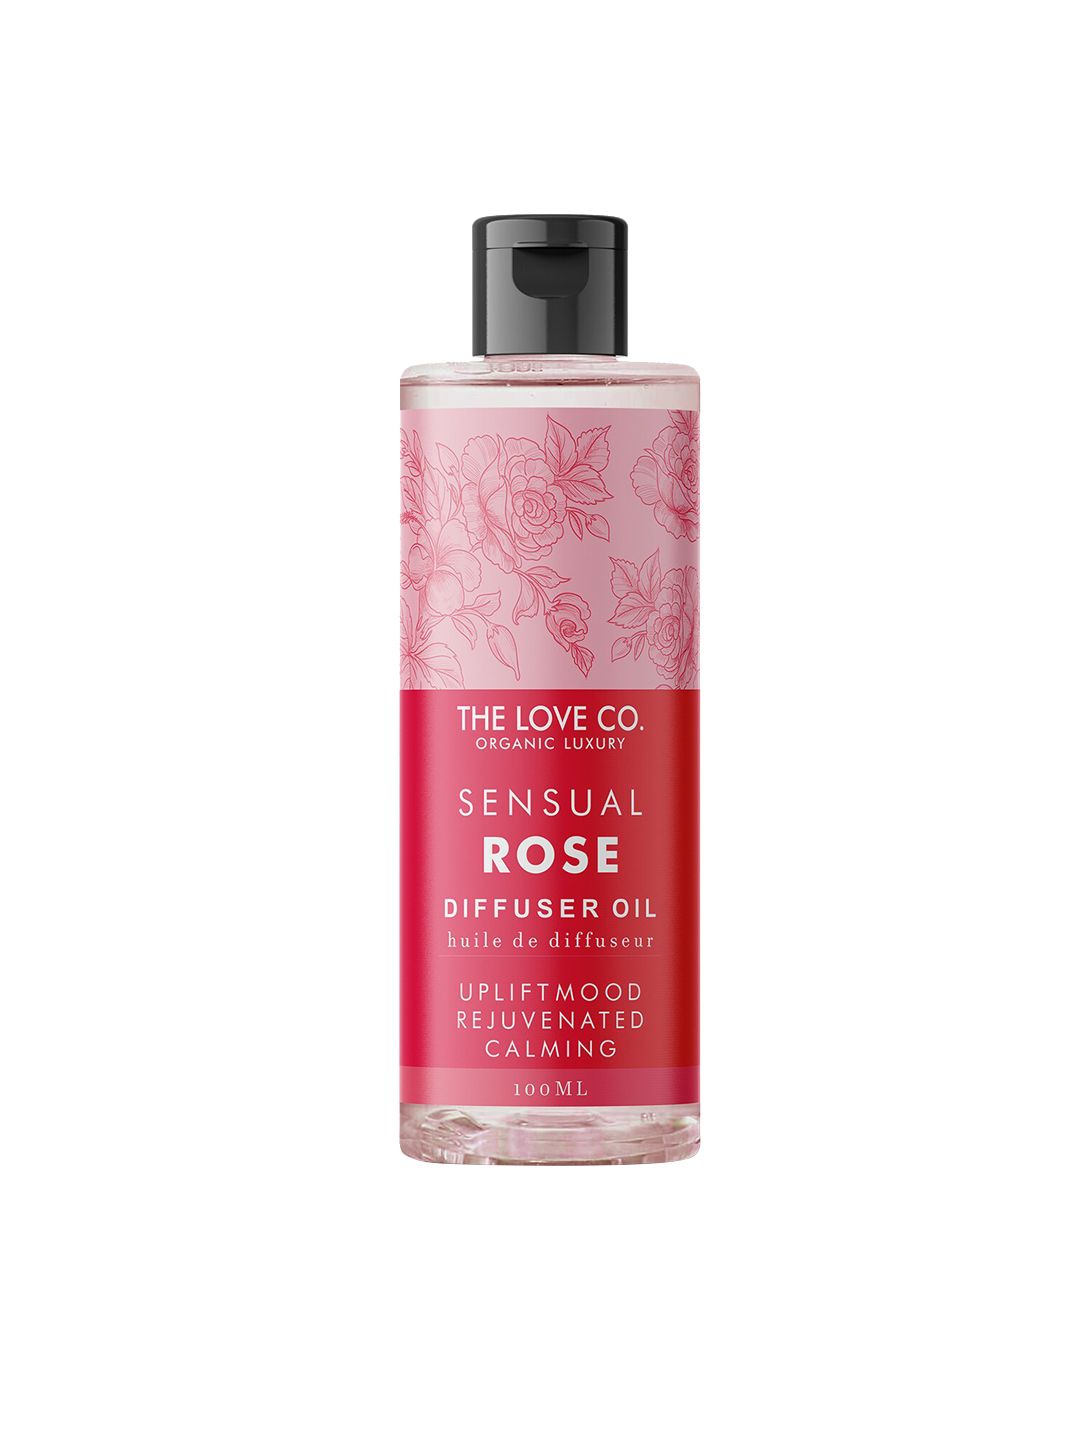 THE LOVE CO. Sensual Rose Diffuser Oil - 100 ml Price in India